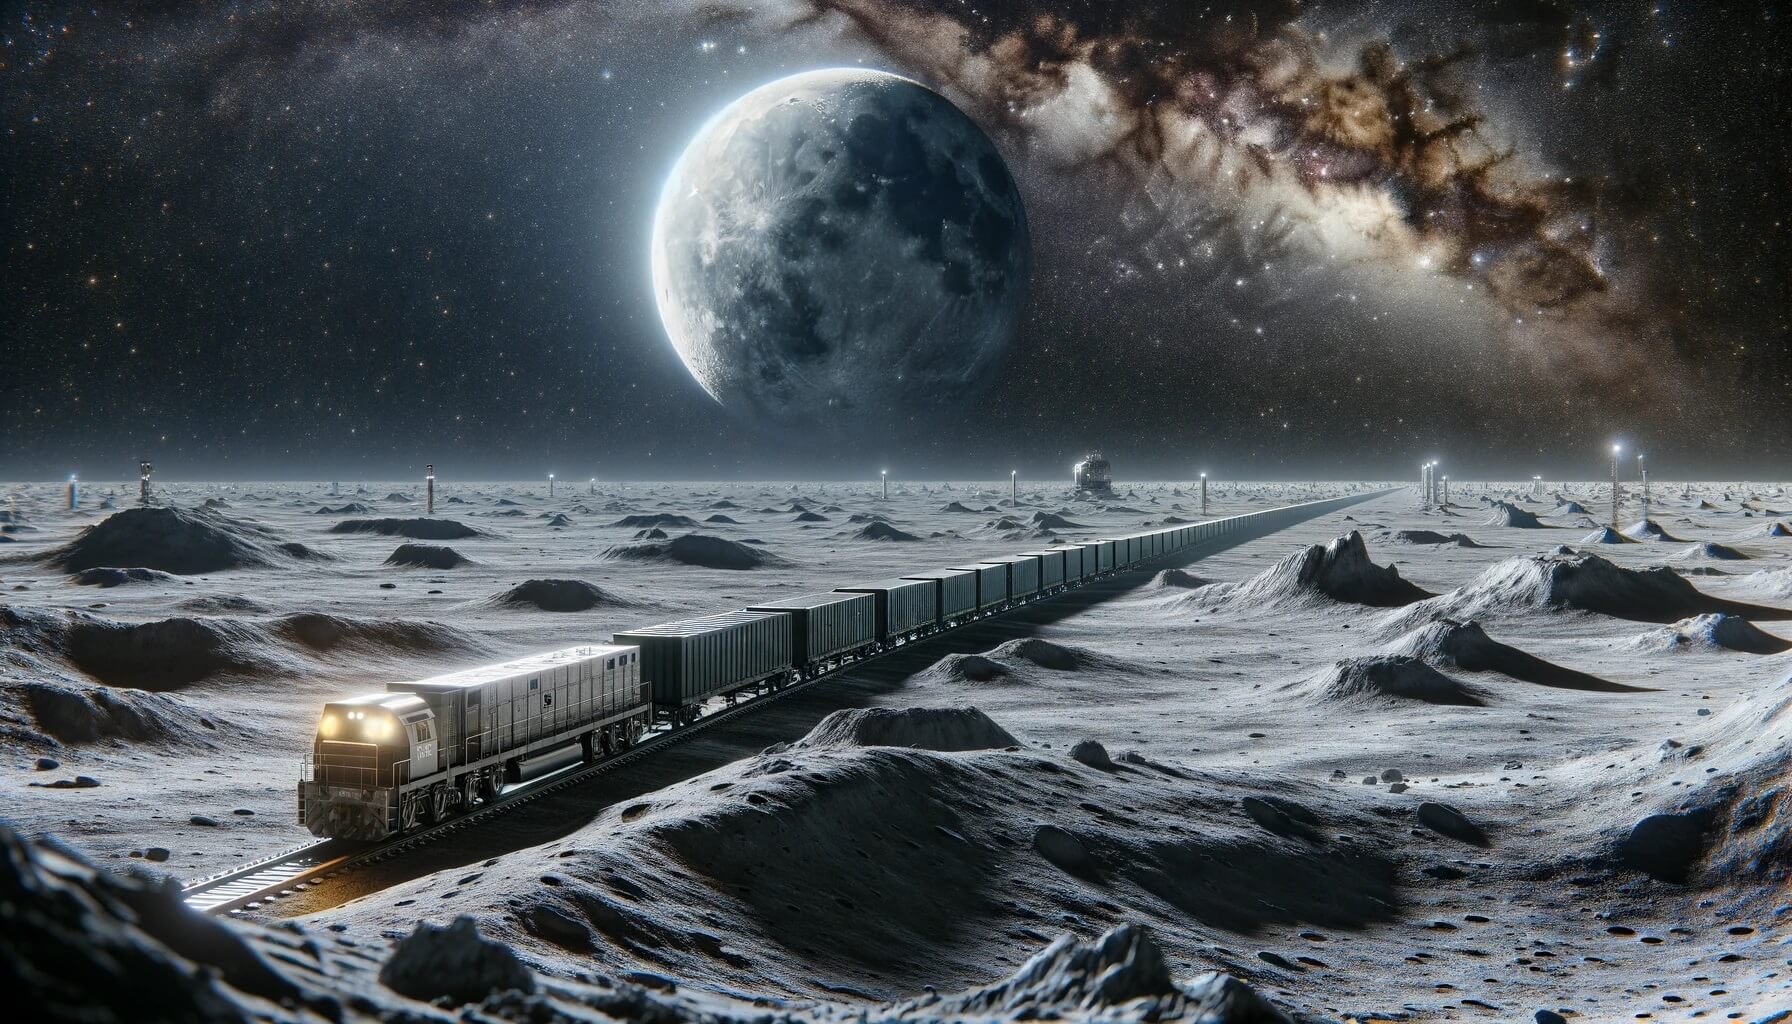 На Луне хотят построить железные дороги для езды между лунными станциями. В будущем на Луне появится железнодорожный транспорт. Изображение: нейросеть DALLE-3. Фото.